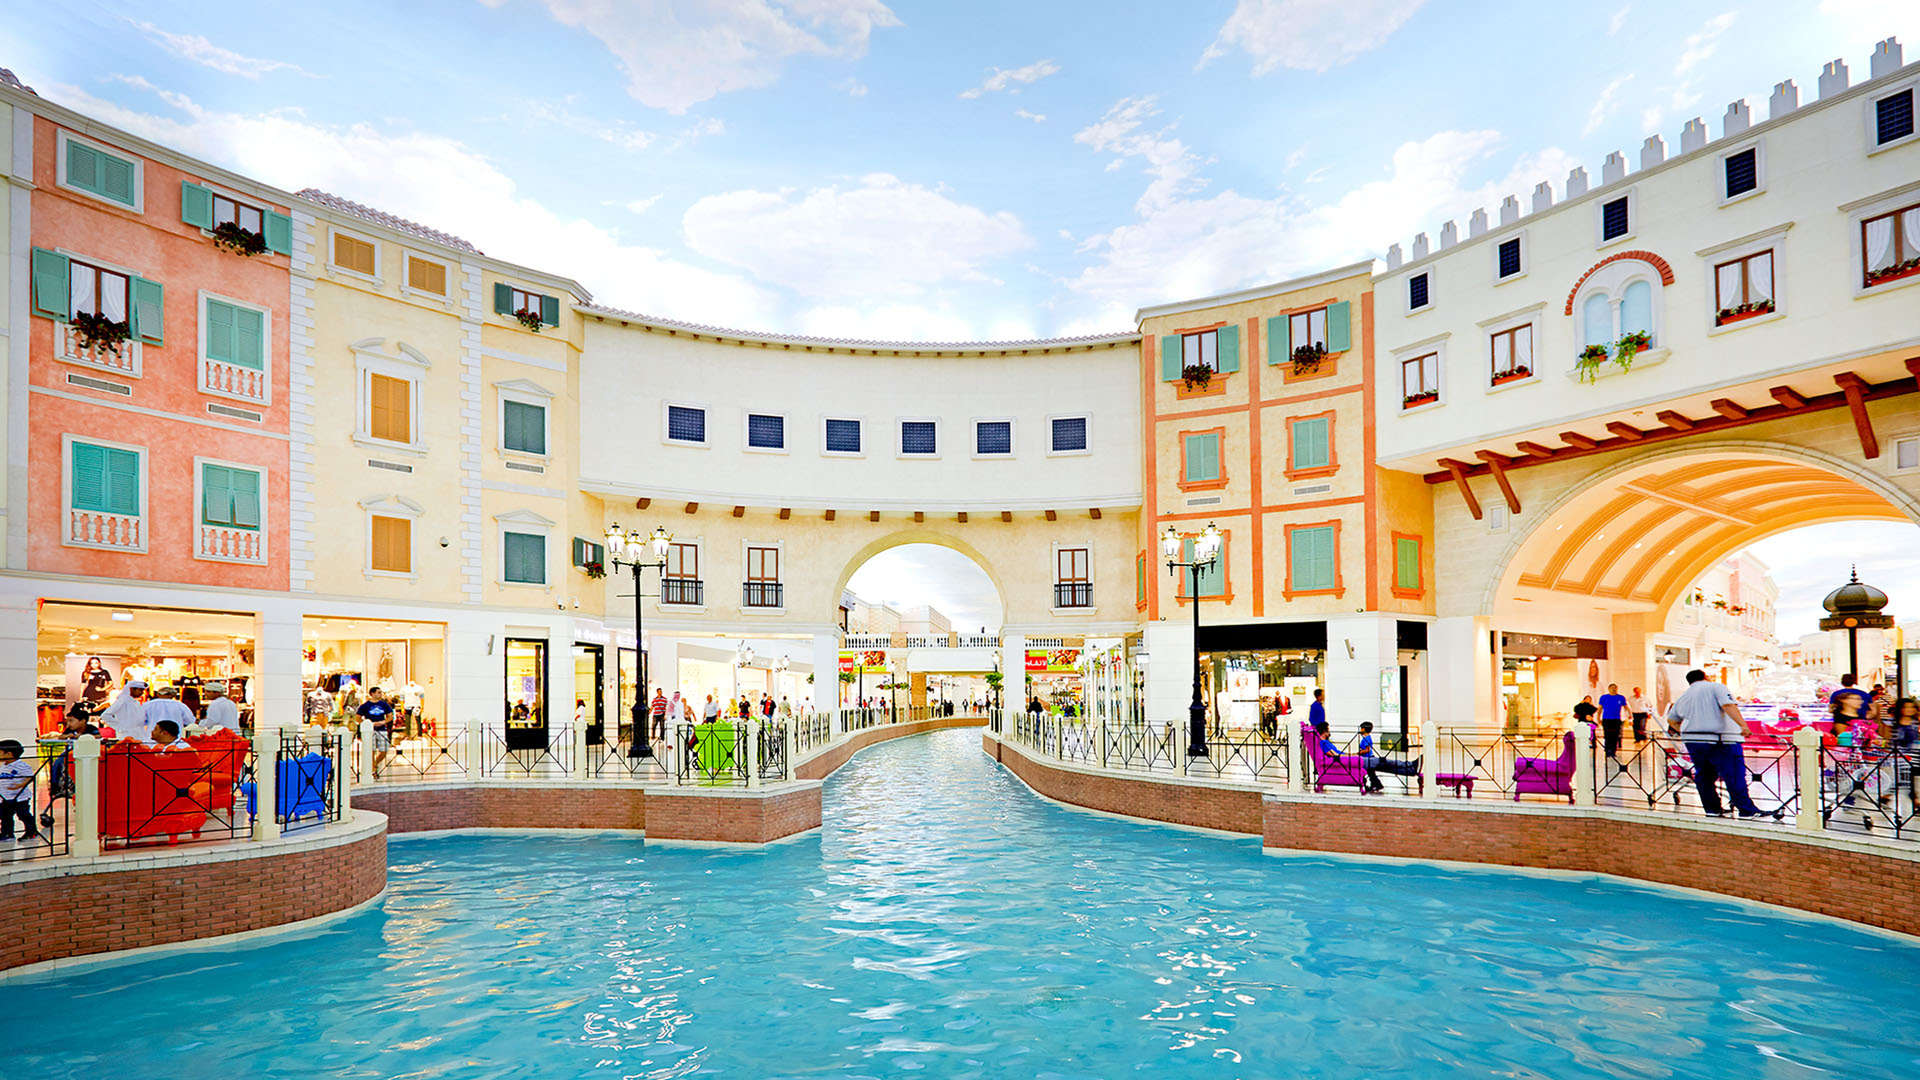 Canal at Villaggio Mall in Doha